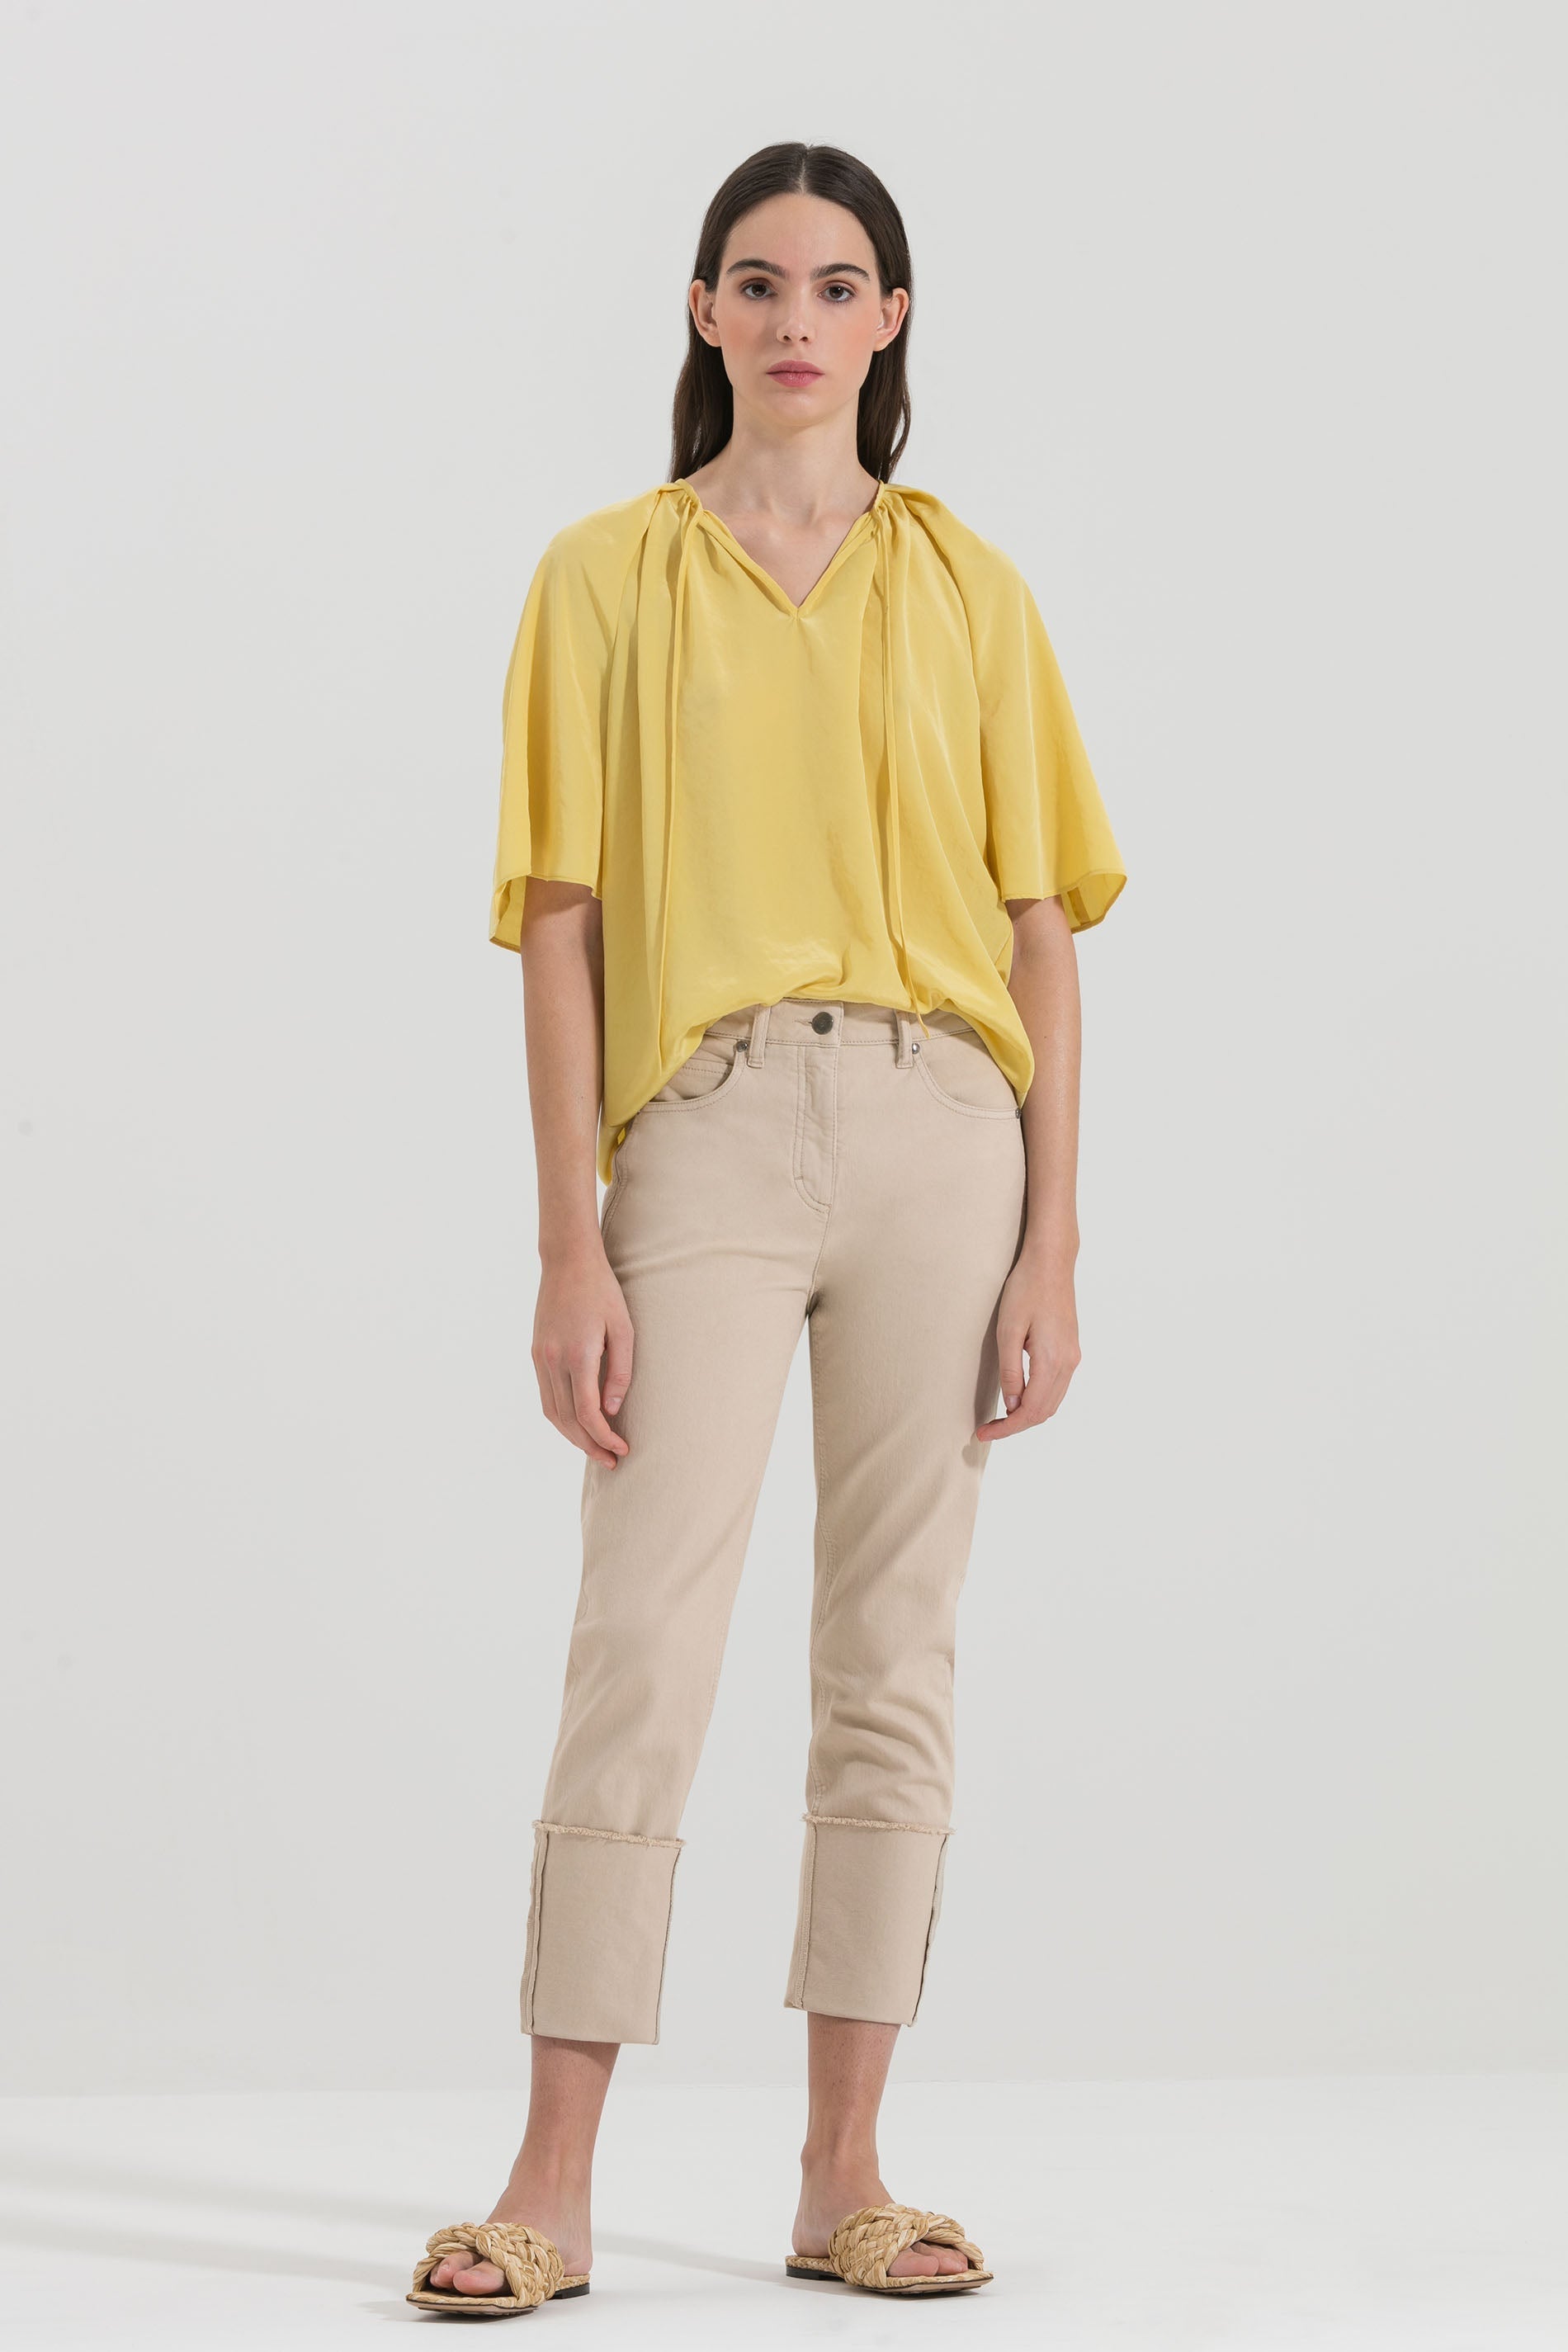 LUISA CERANO-OUTLET-SALE-Halbarmshirt mit Raffungen-Shirts-34-sun yellow-by-ARCHIVIST